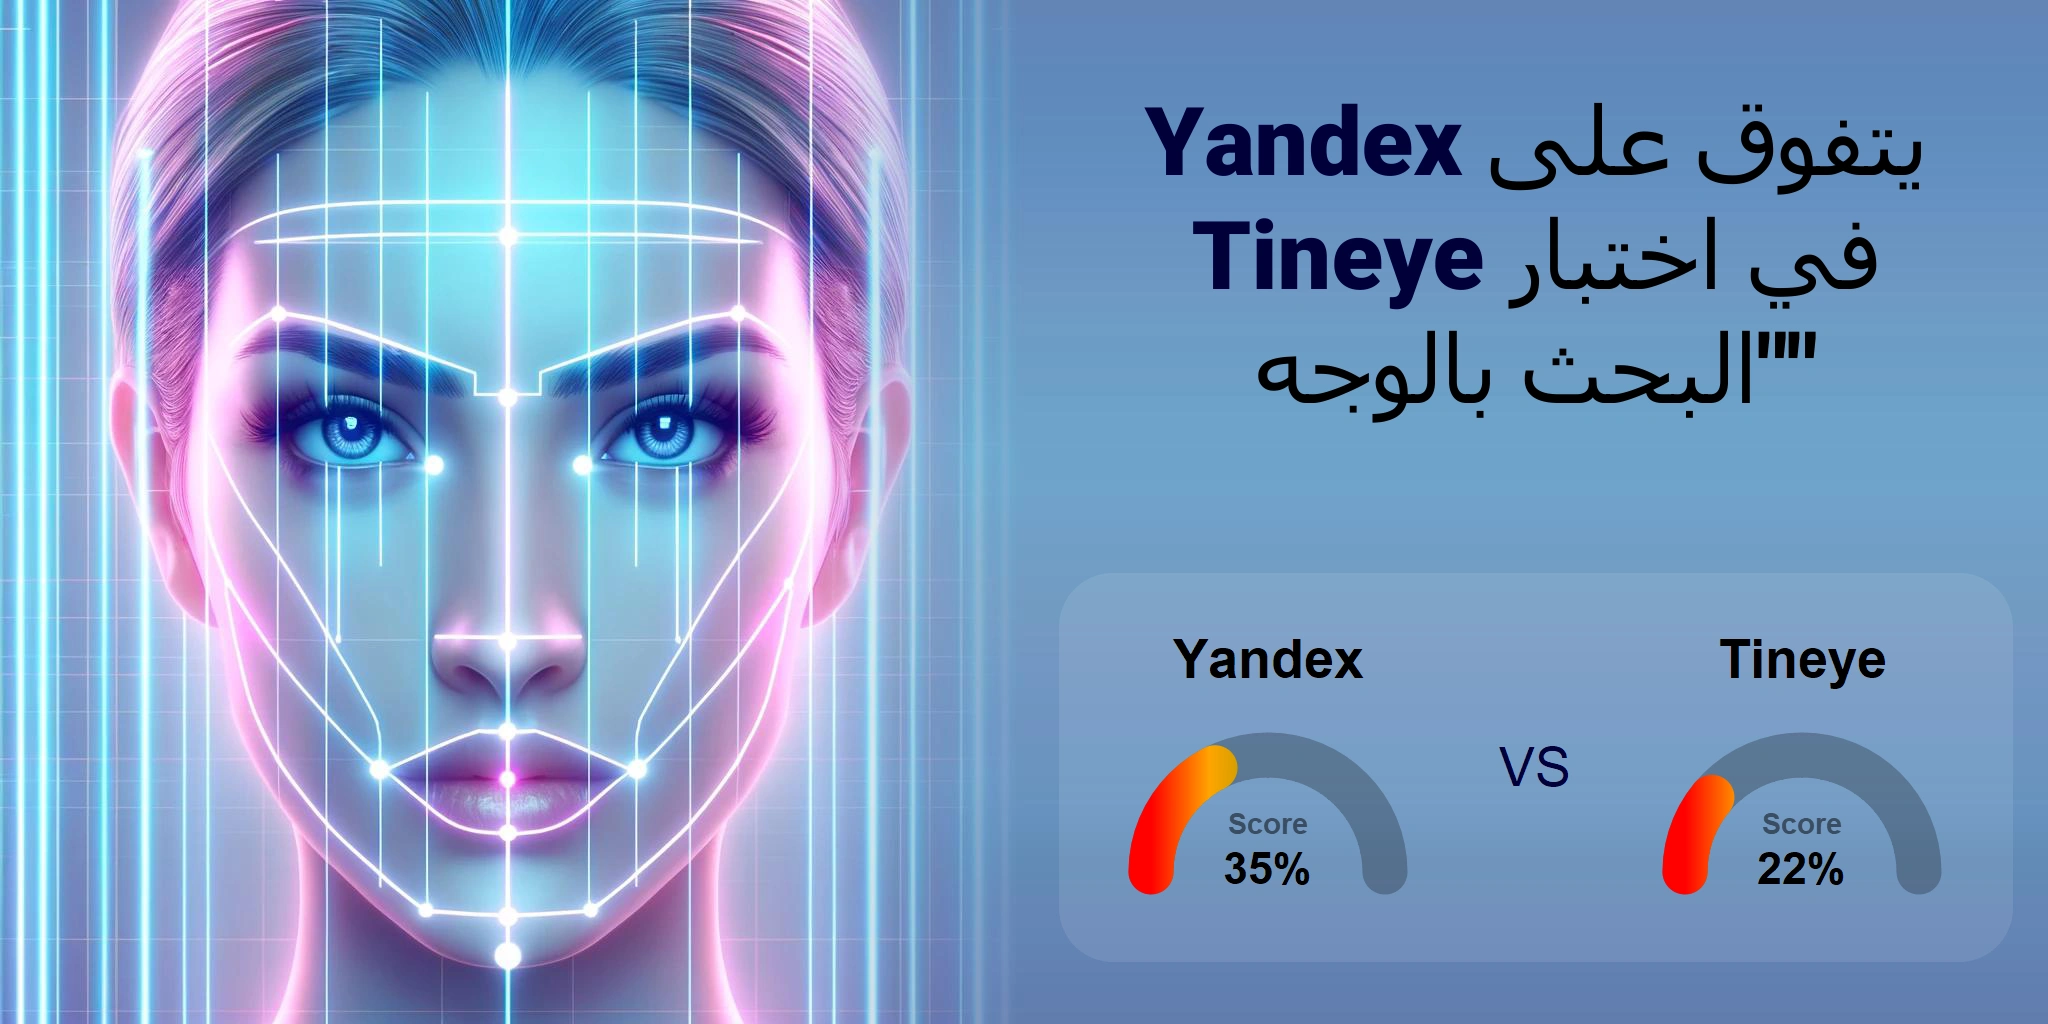 ما هو الأفضل للبحث بالوجه: <br>Tineye أو Yandex؟